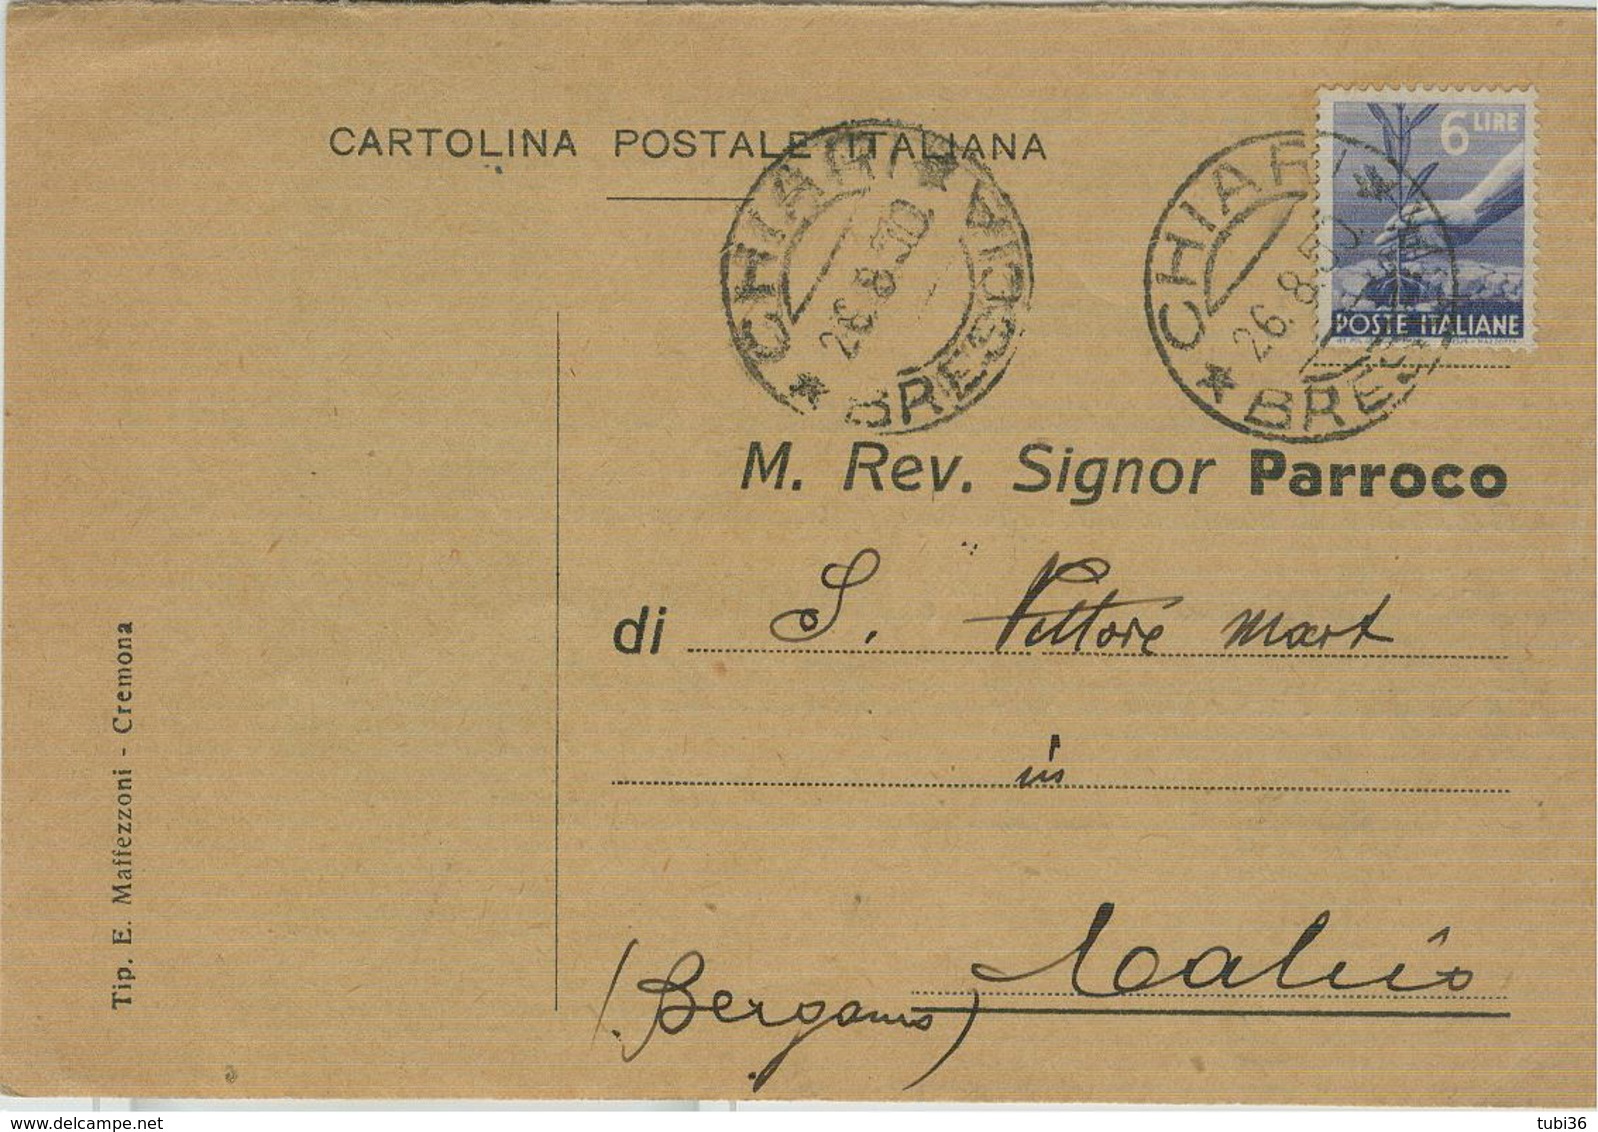 CHIARI(BRESCIA)-RICEVUTA DI NOTIFICAZIONE MATRIMONIO,1950,PER PARROCCHIA DI "S.VITTORE M."CALCIO(BERGAMO), - Nozze